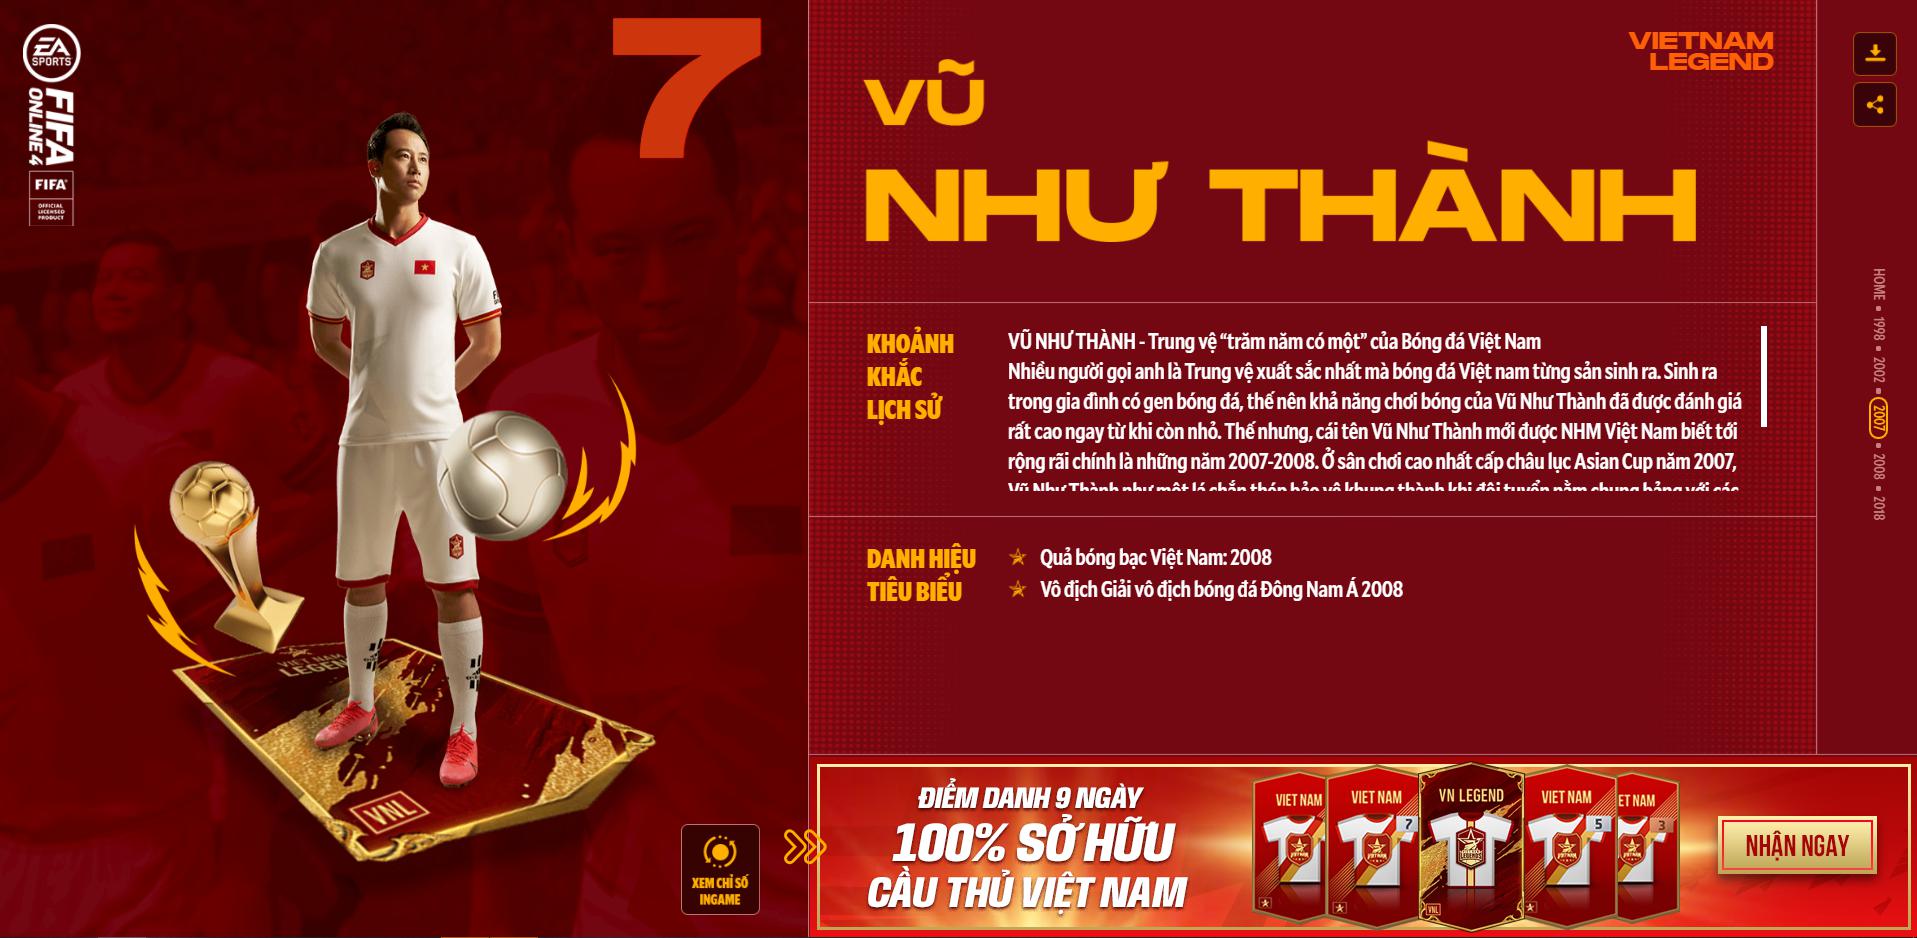 Hồng Sơn và các huyền thoại bóng đá Việt Nam bất ngờ xuất hiện trong FIFA Online 4 - Ảnh 6.